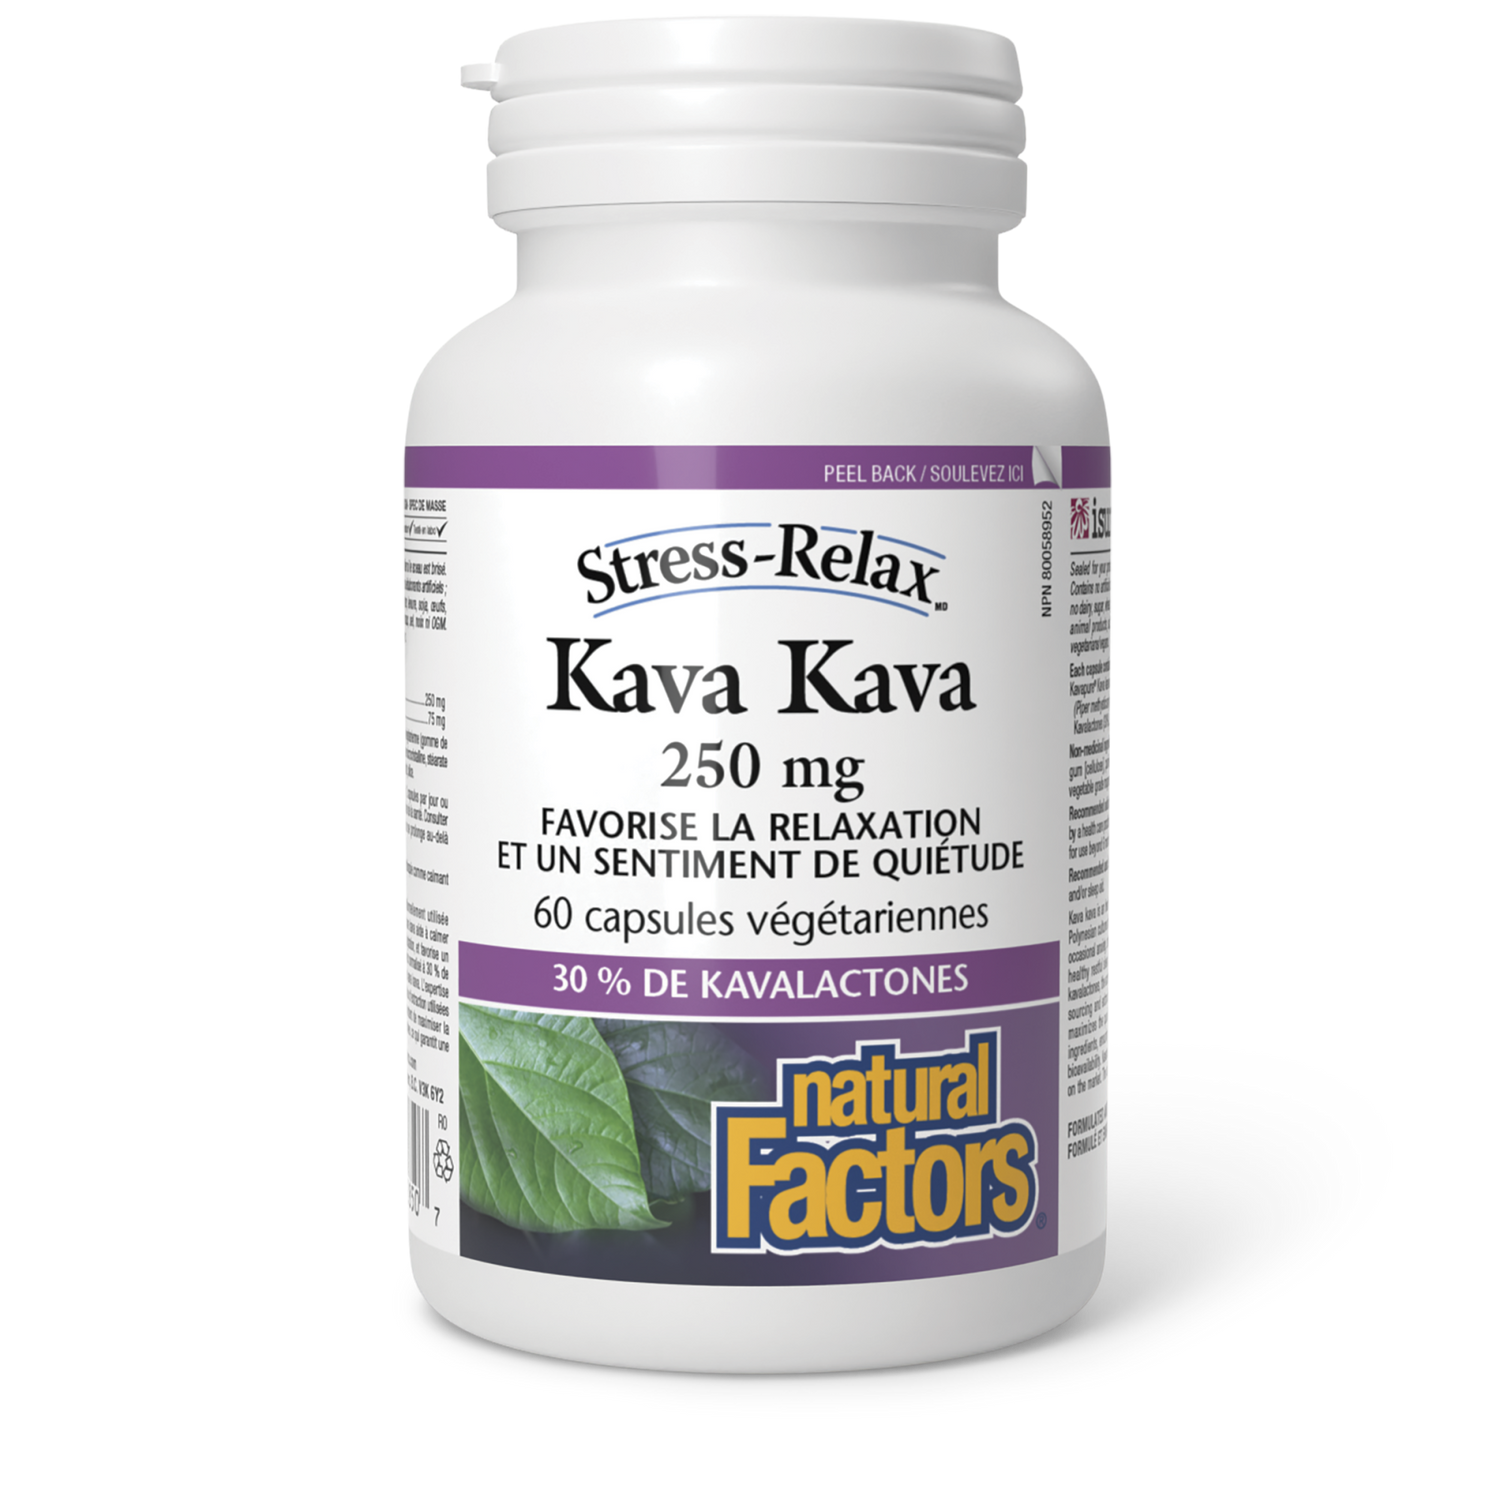 Kava Kava 250 mg, Stress-Relax, Natural Factors|v|image|2850